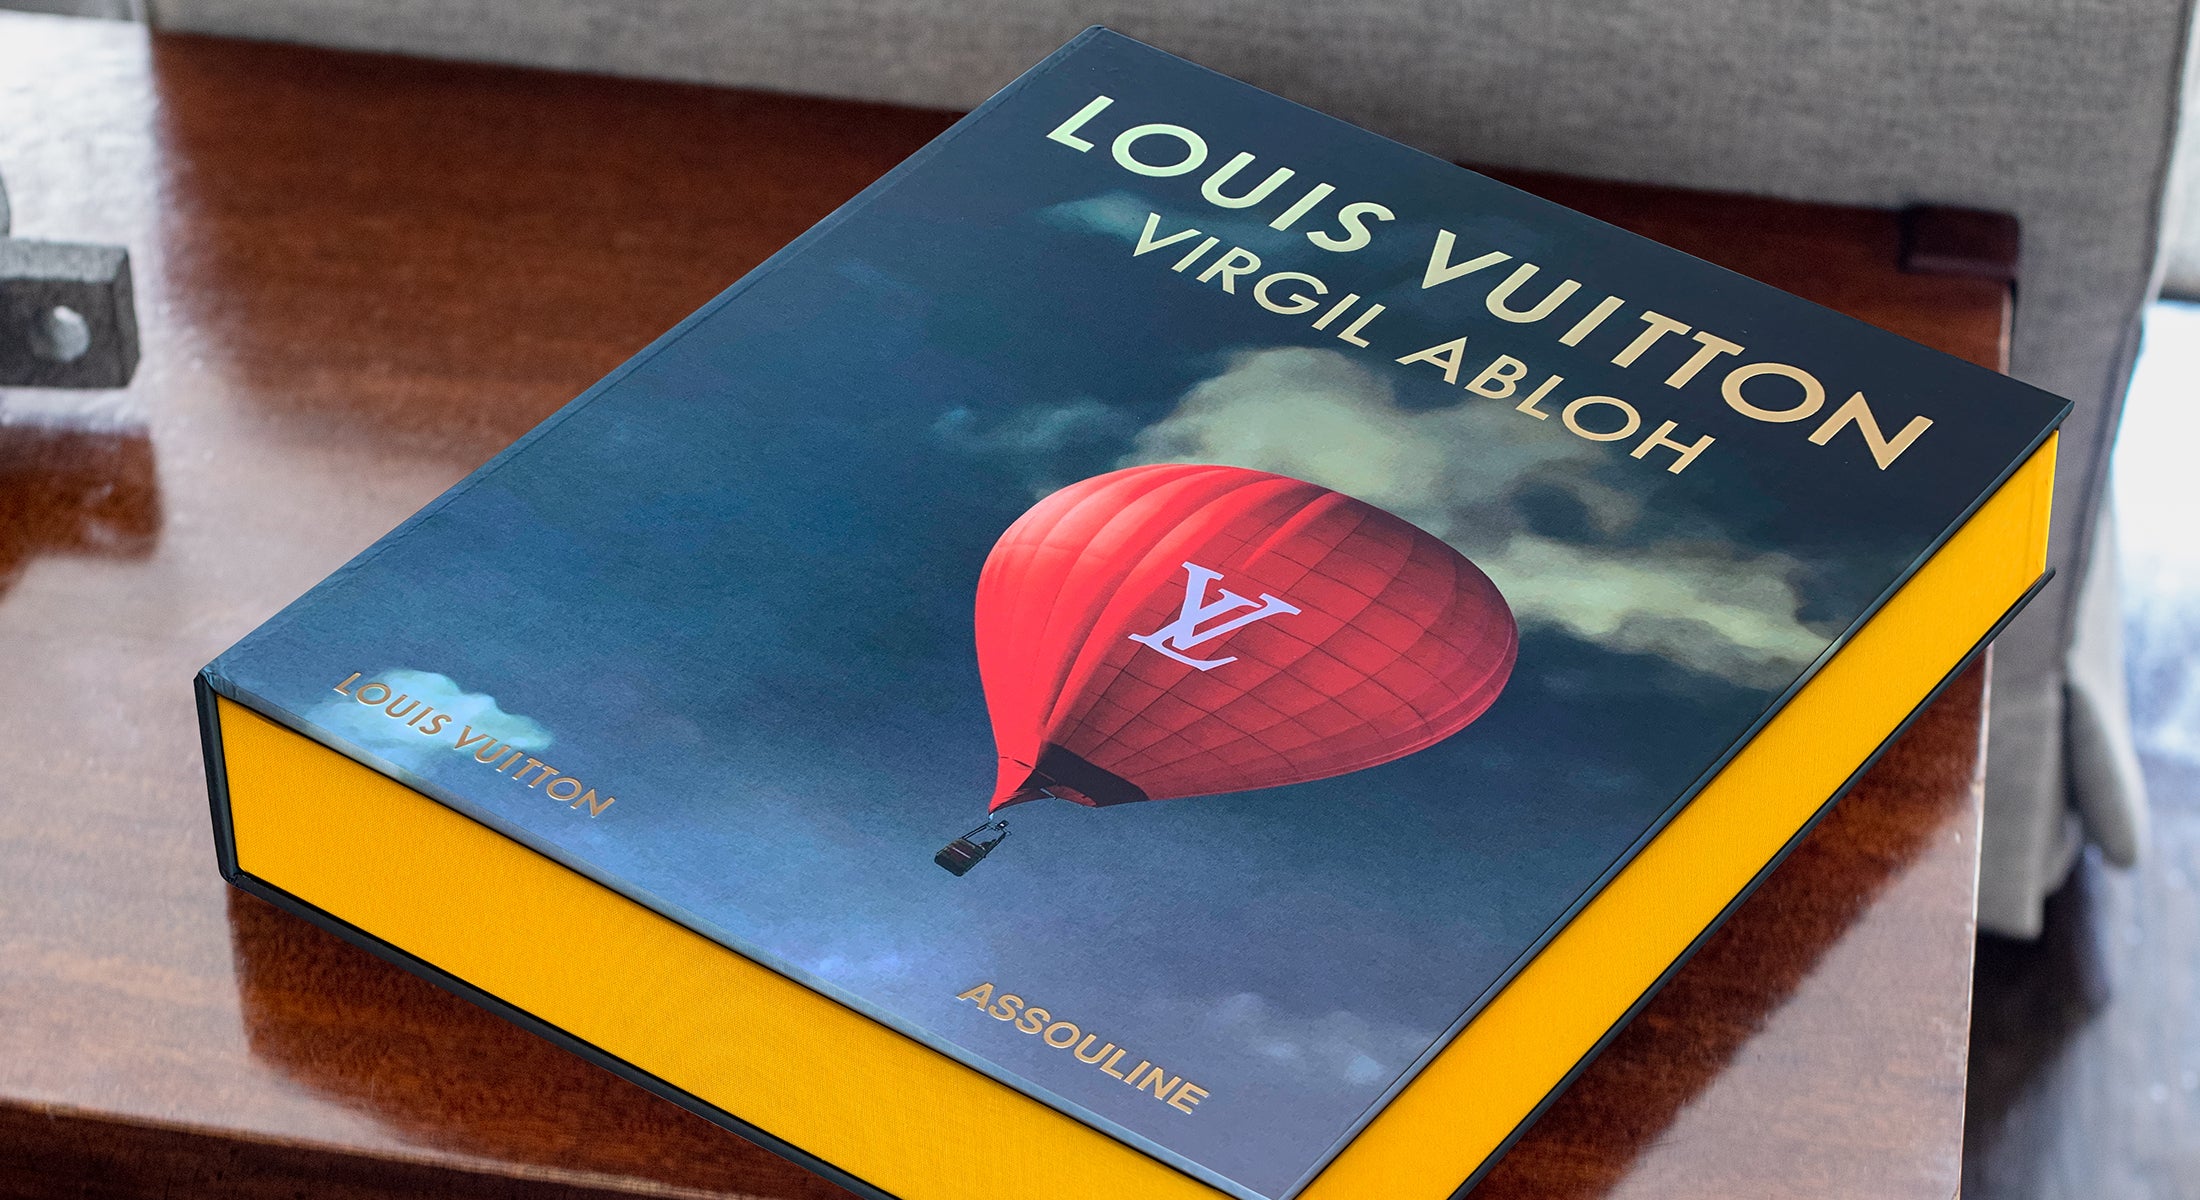 Louis Vuitton: Virgil Abloh (Classic Balloon Cover) - Assouline